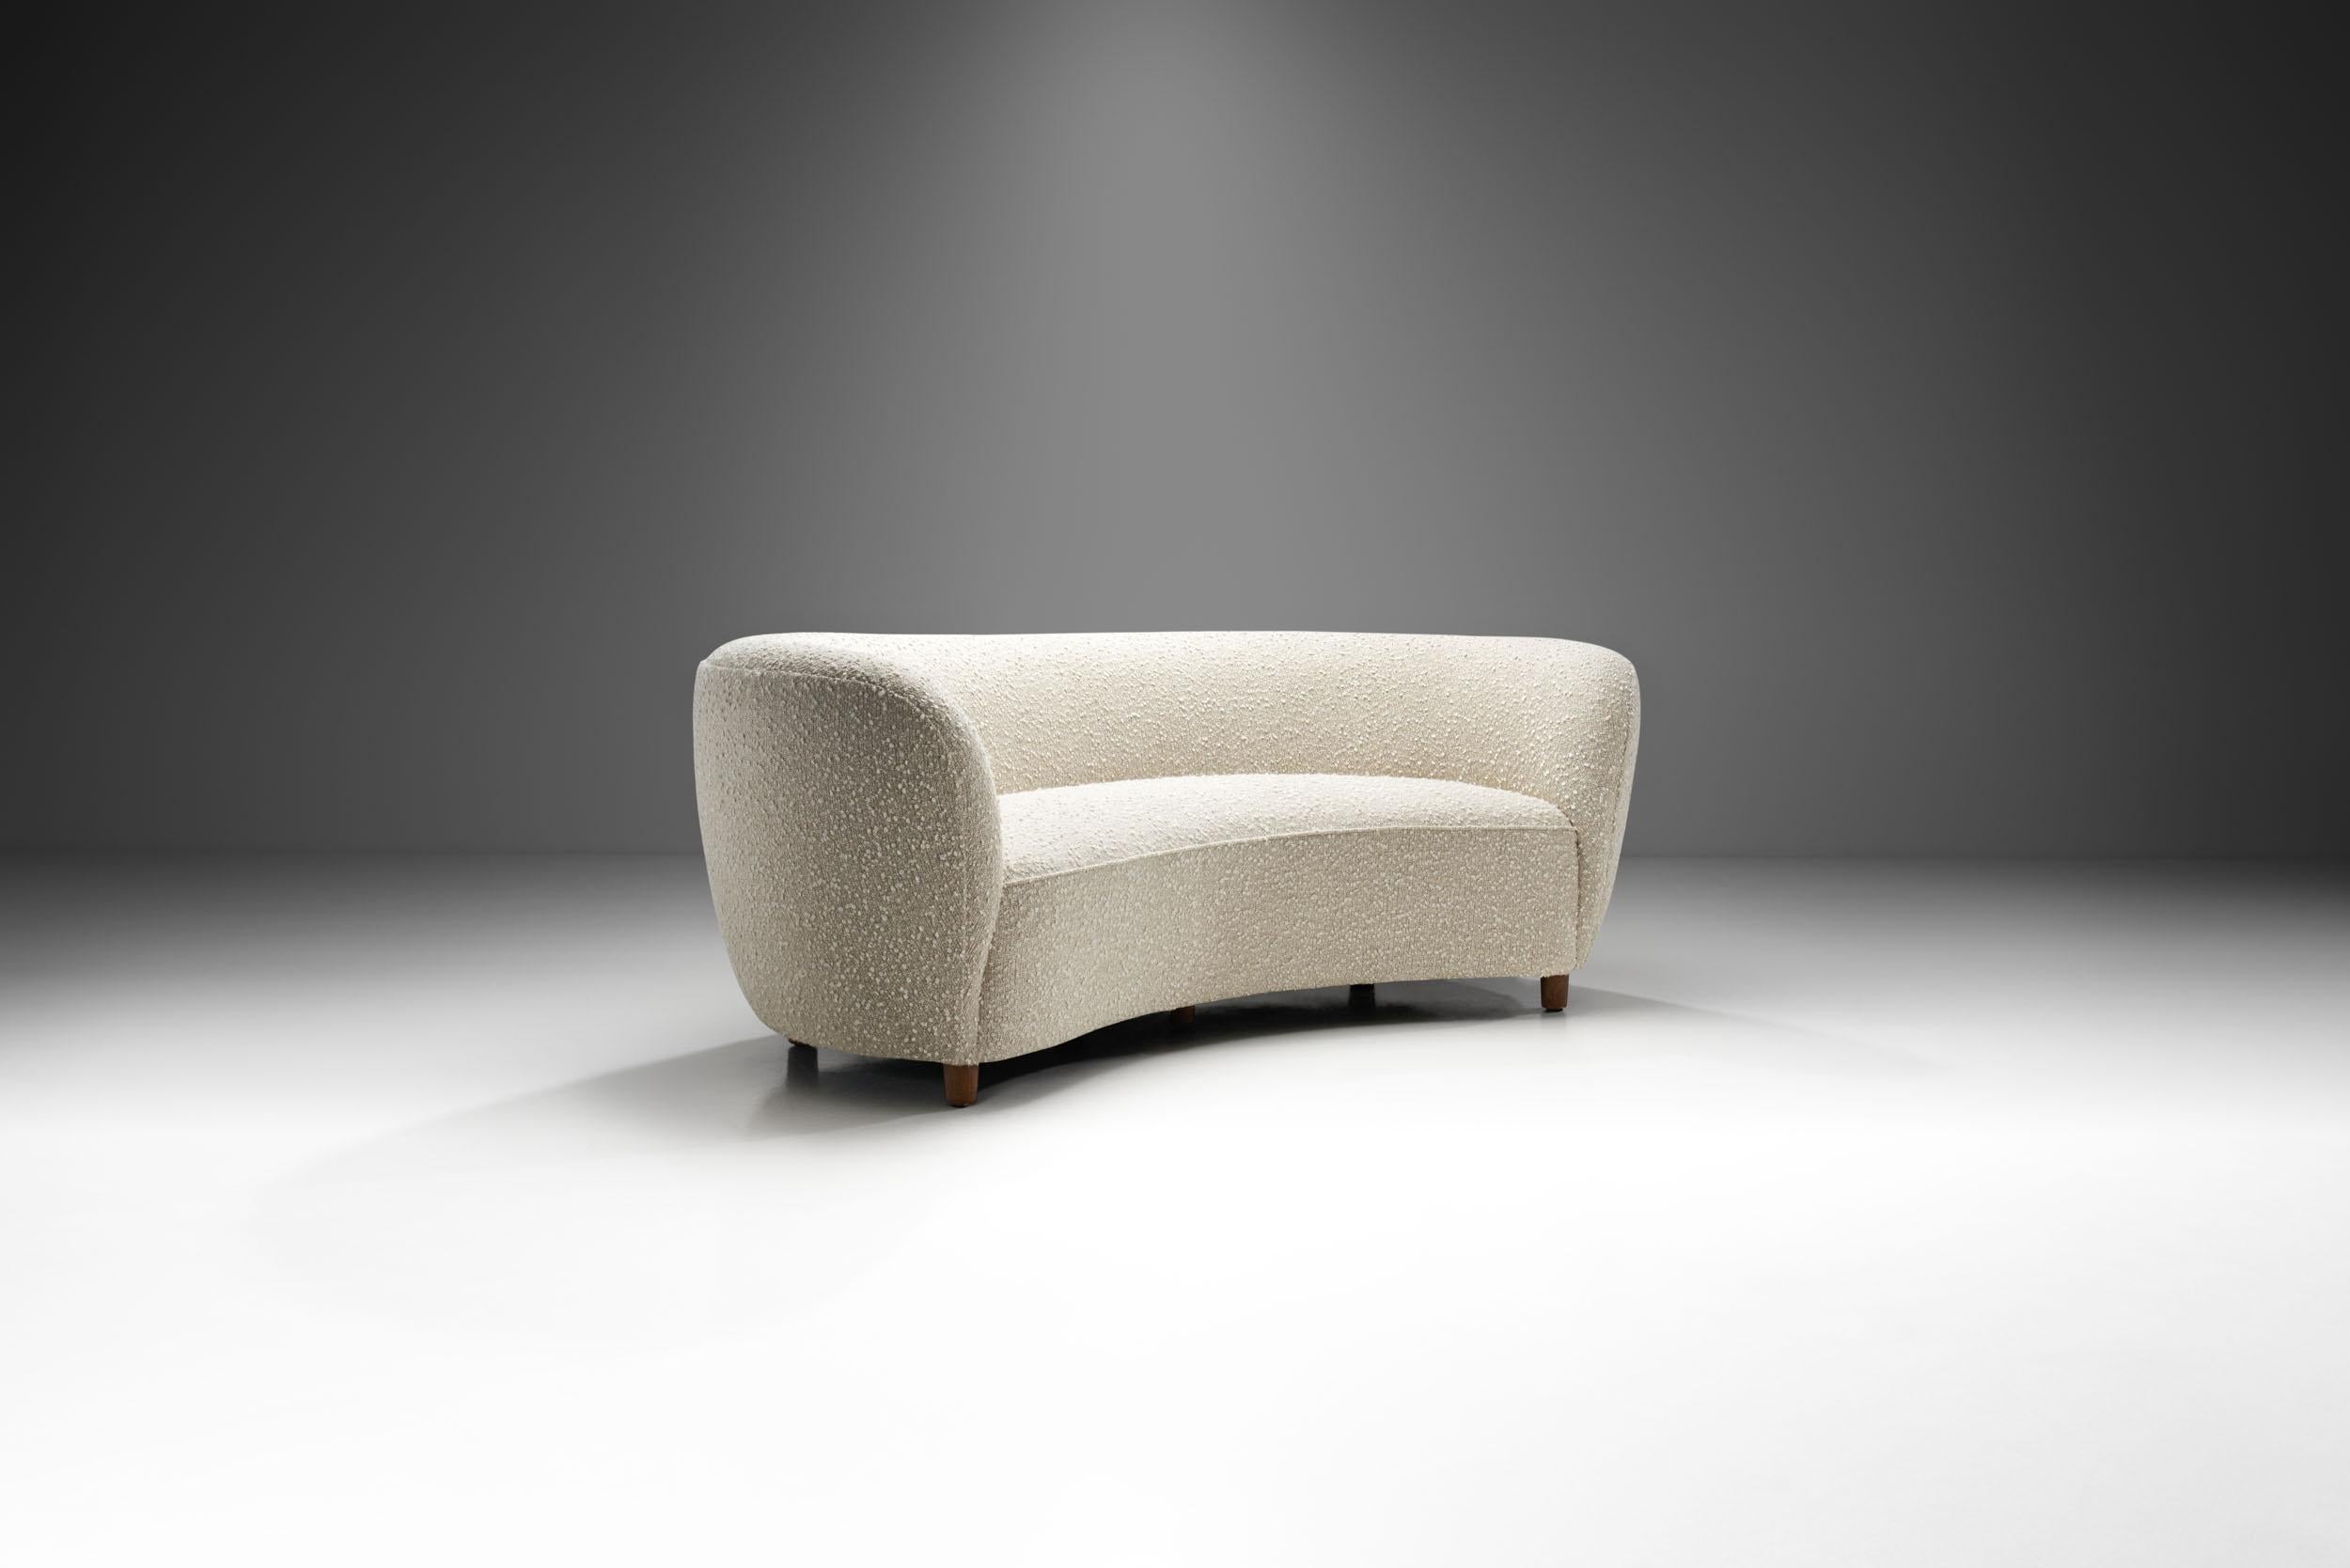 Dieses schöne dänische Dreisitzer-Sofa erinnert an den Art-Déco-Stil der 1930er Jahre mit dem erkennbaren Touch des dänischen Modernismus. Dank seiner elegant geschwungenen Form wird dieser Sofatyp oft als 